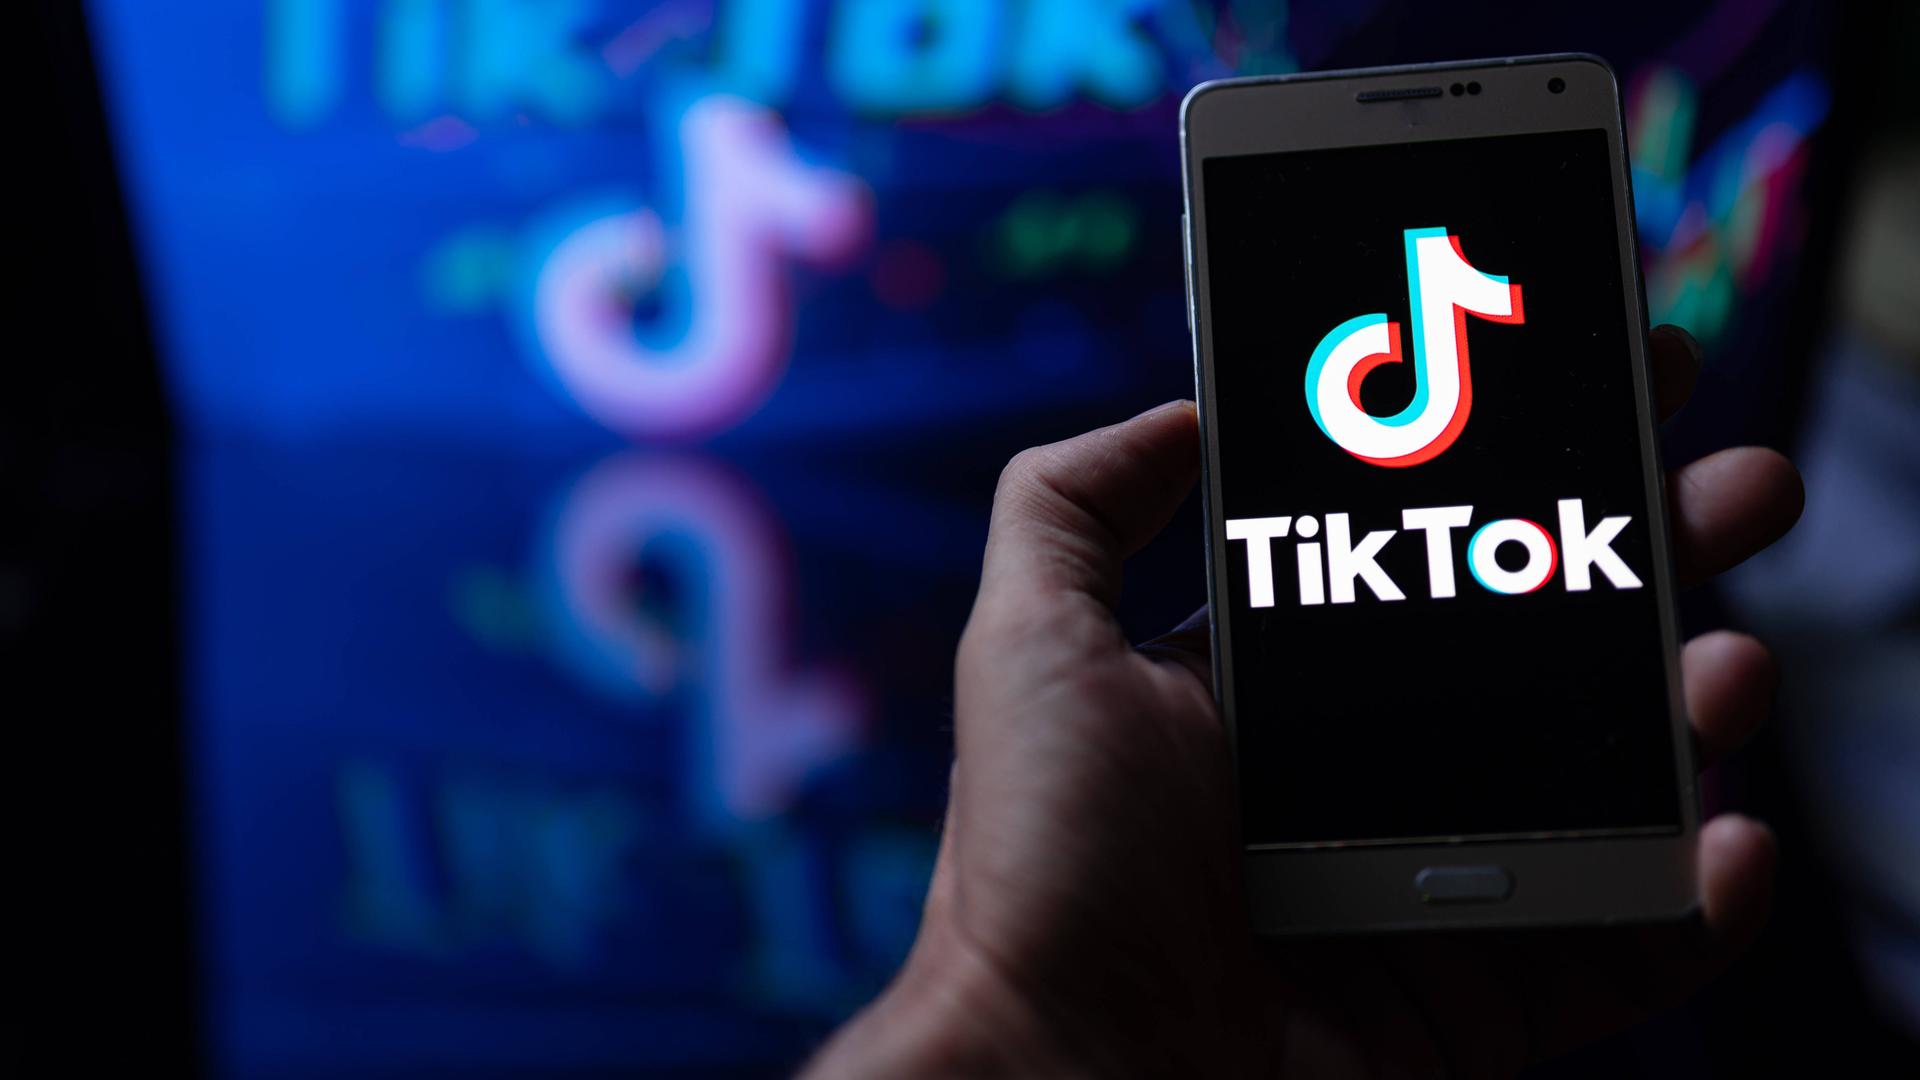 Auf dem Bild ist ein Handy zu sehen. Auf dem Display leuchtet das TikTok Logo auf. 